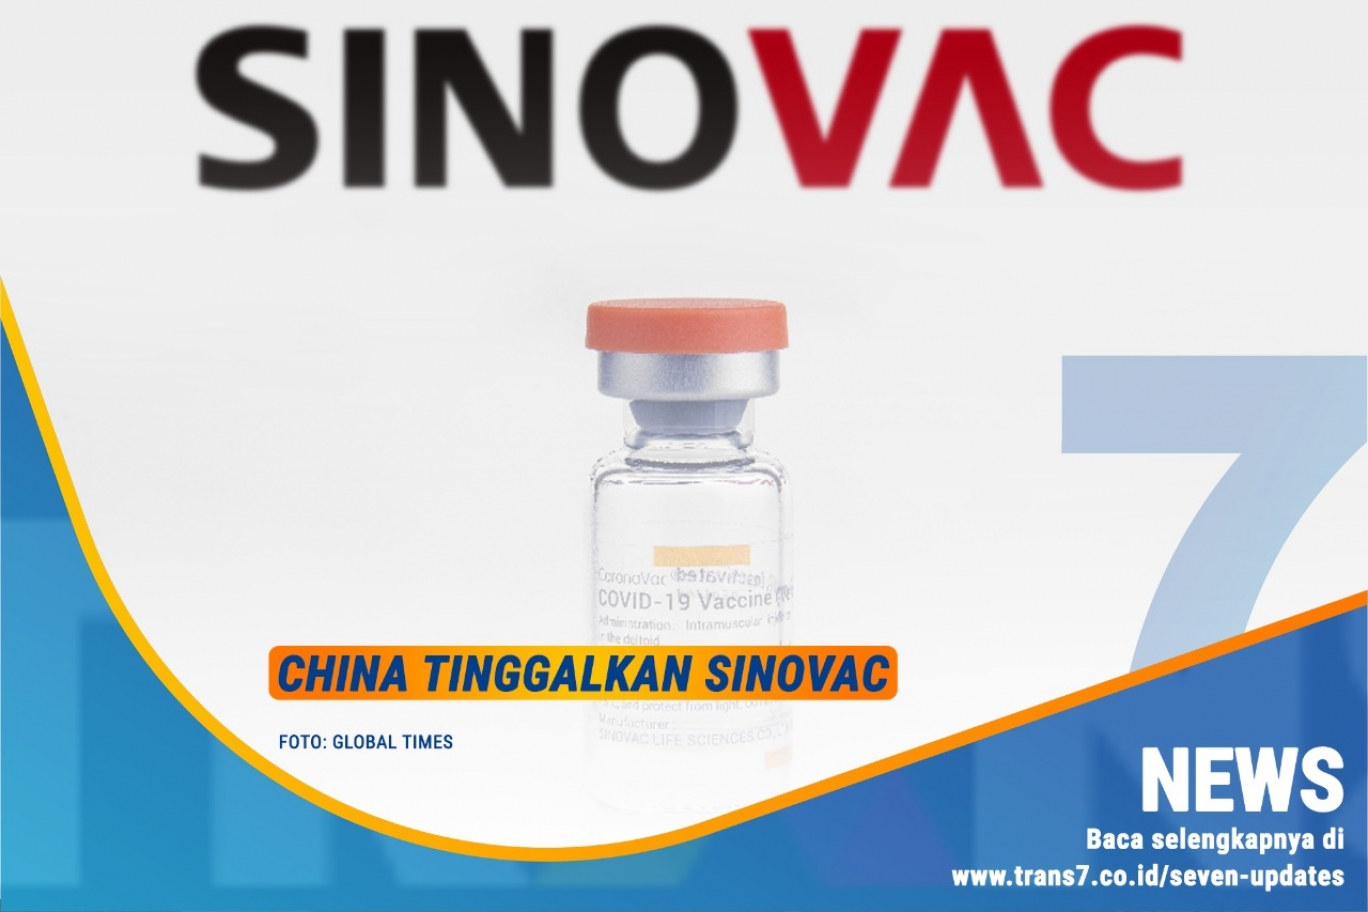 China Tinggalkan Sinovac